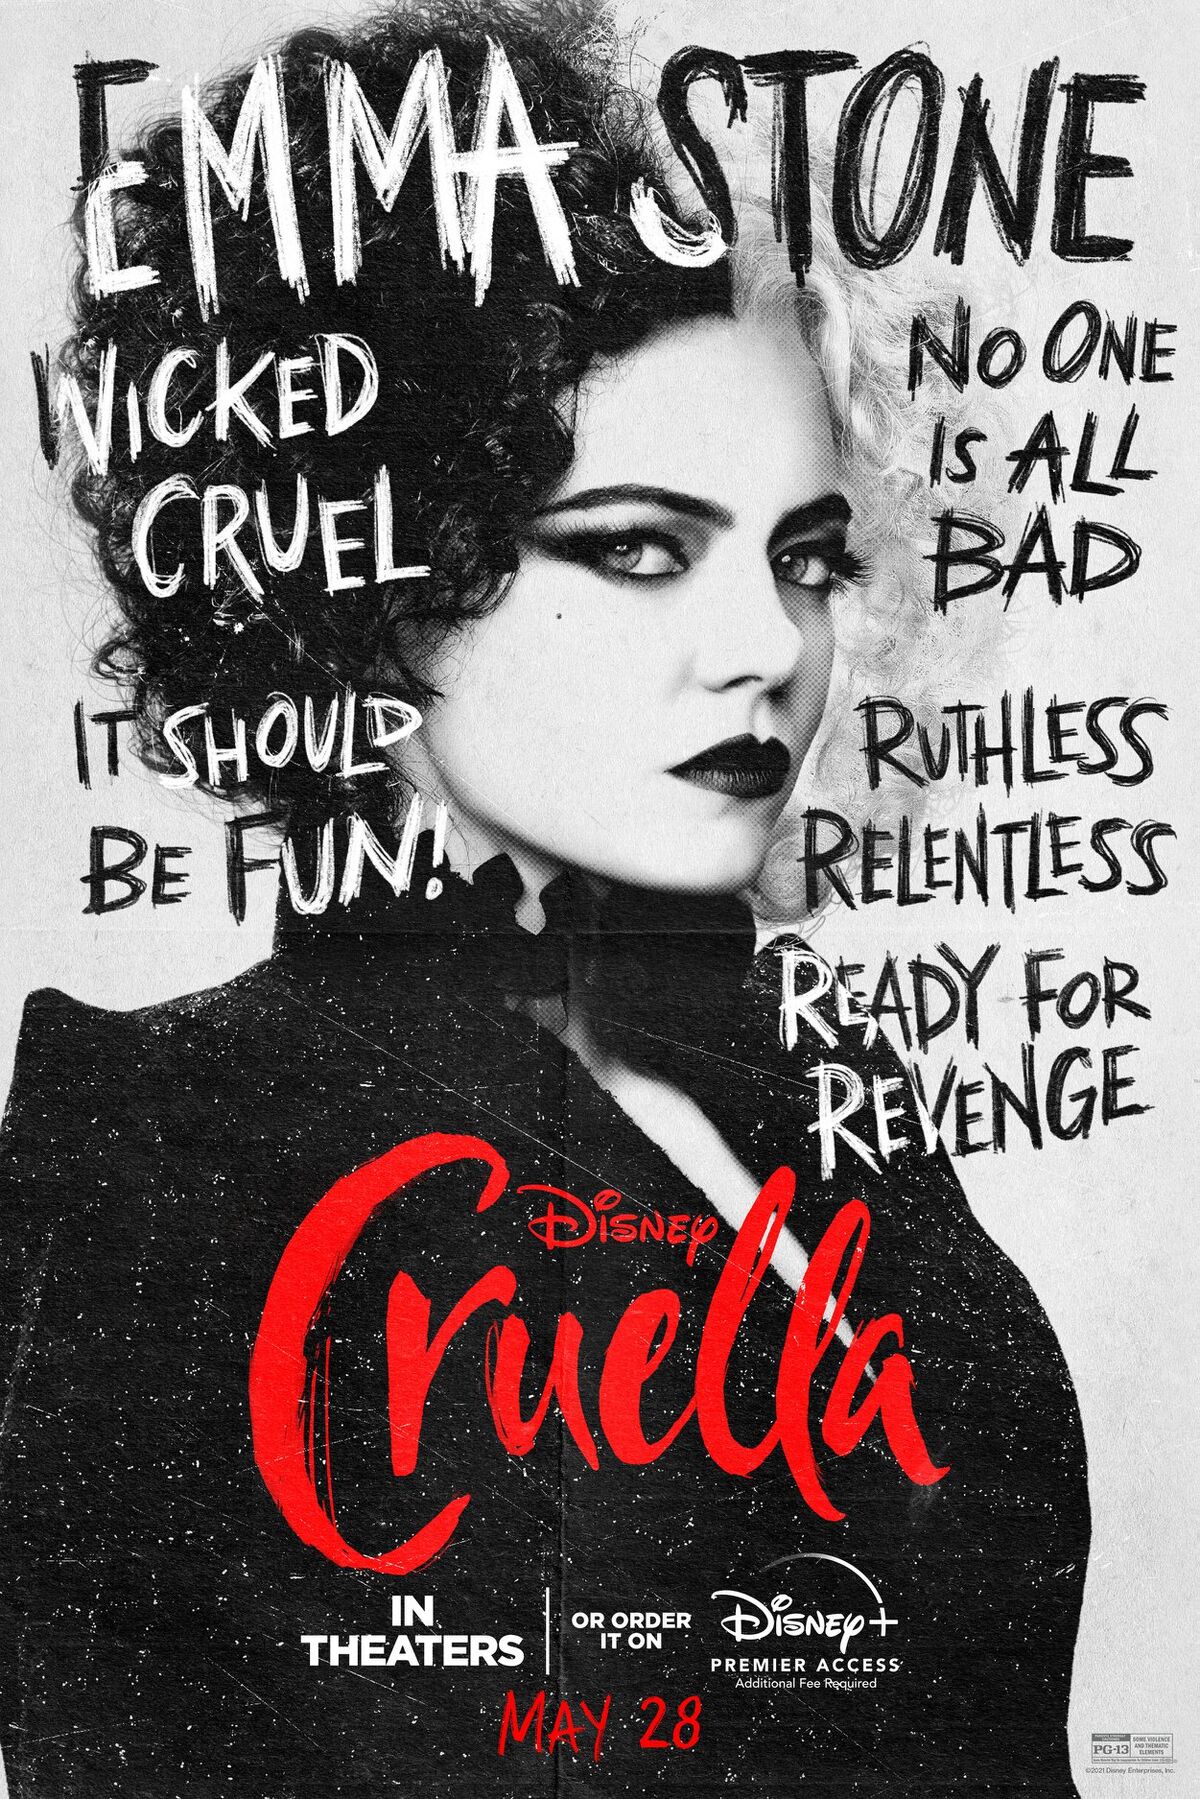 What Does Cruella de Vil Want? It's Hard to Explain